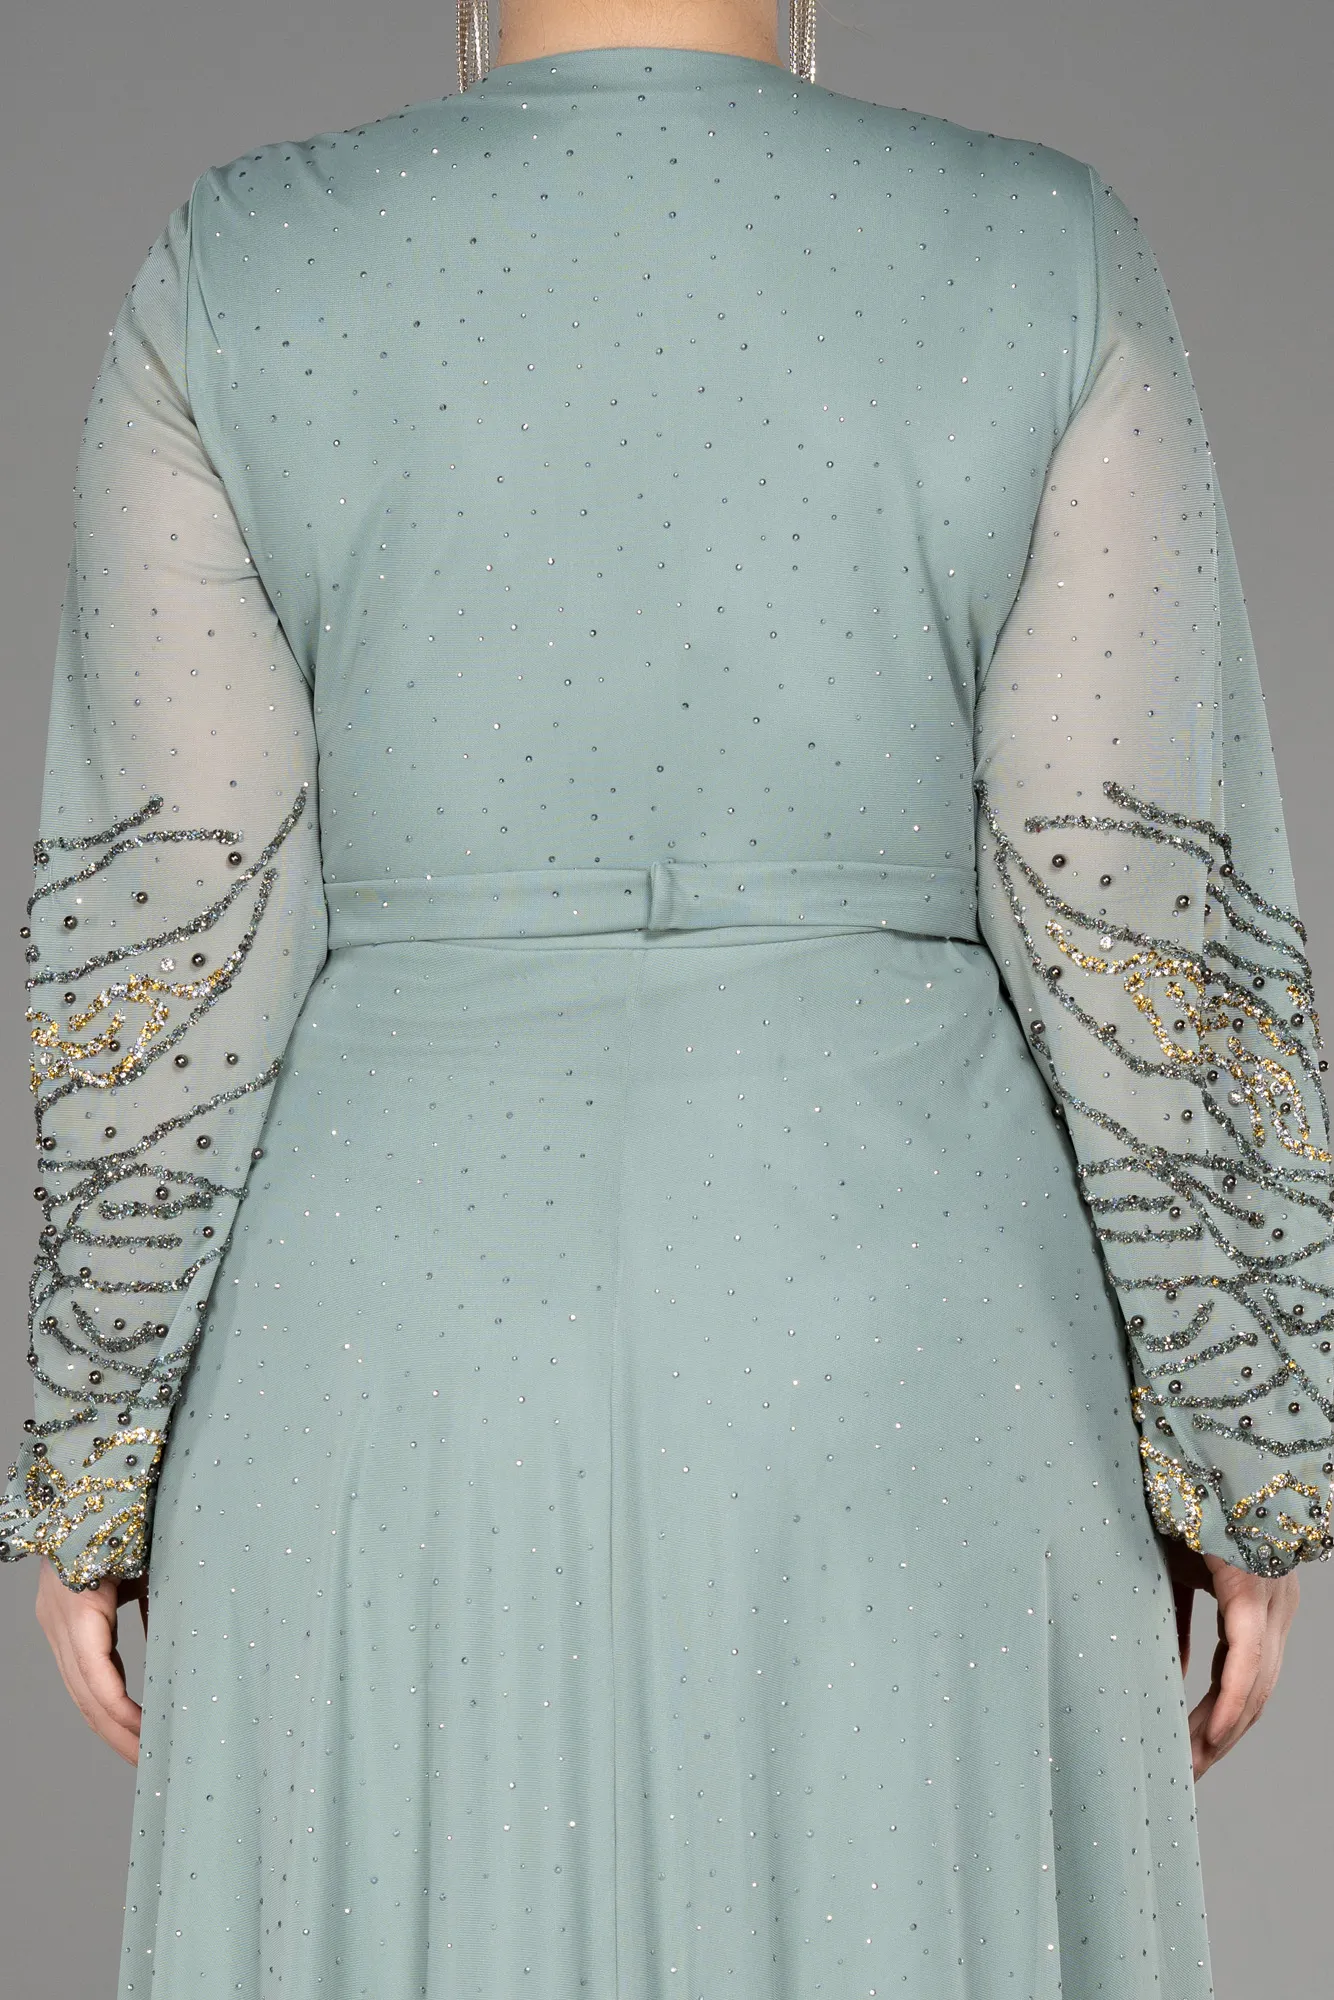 Turquoise-Long Plus Size Engagement Dress ABU3653